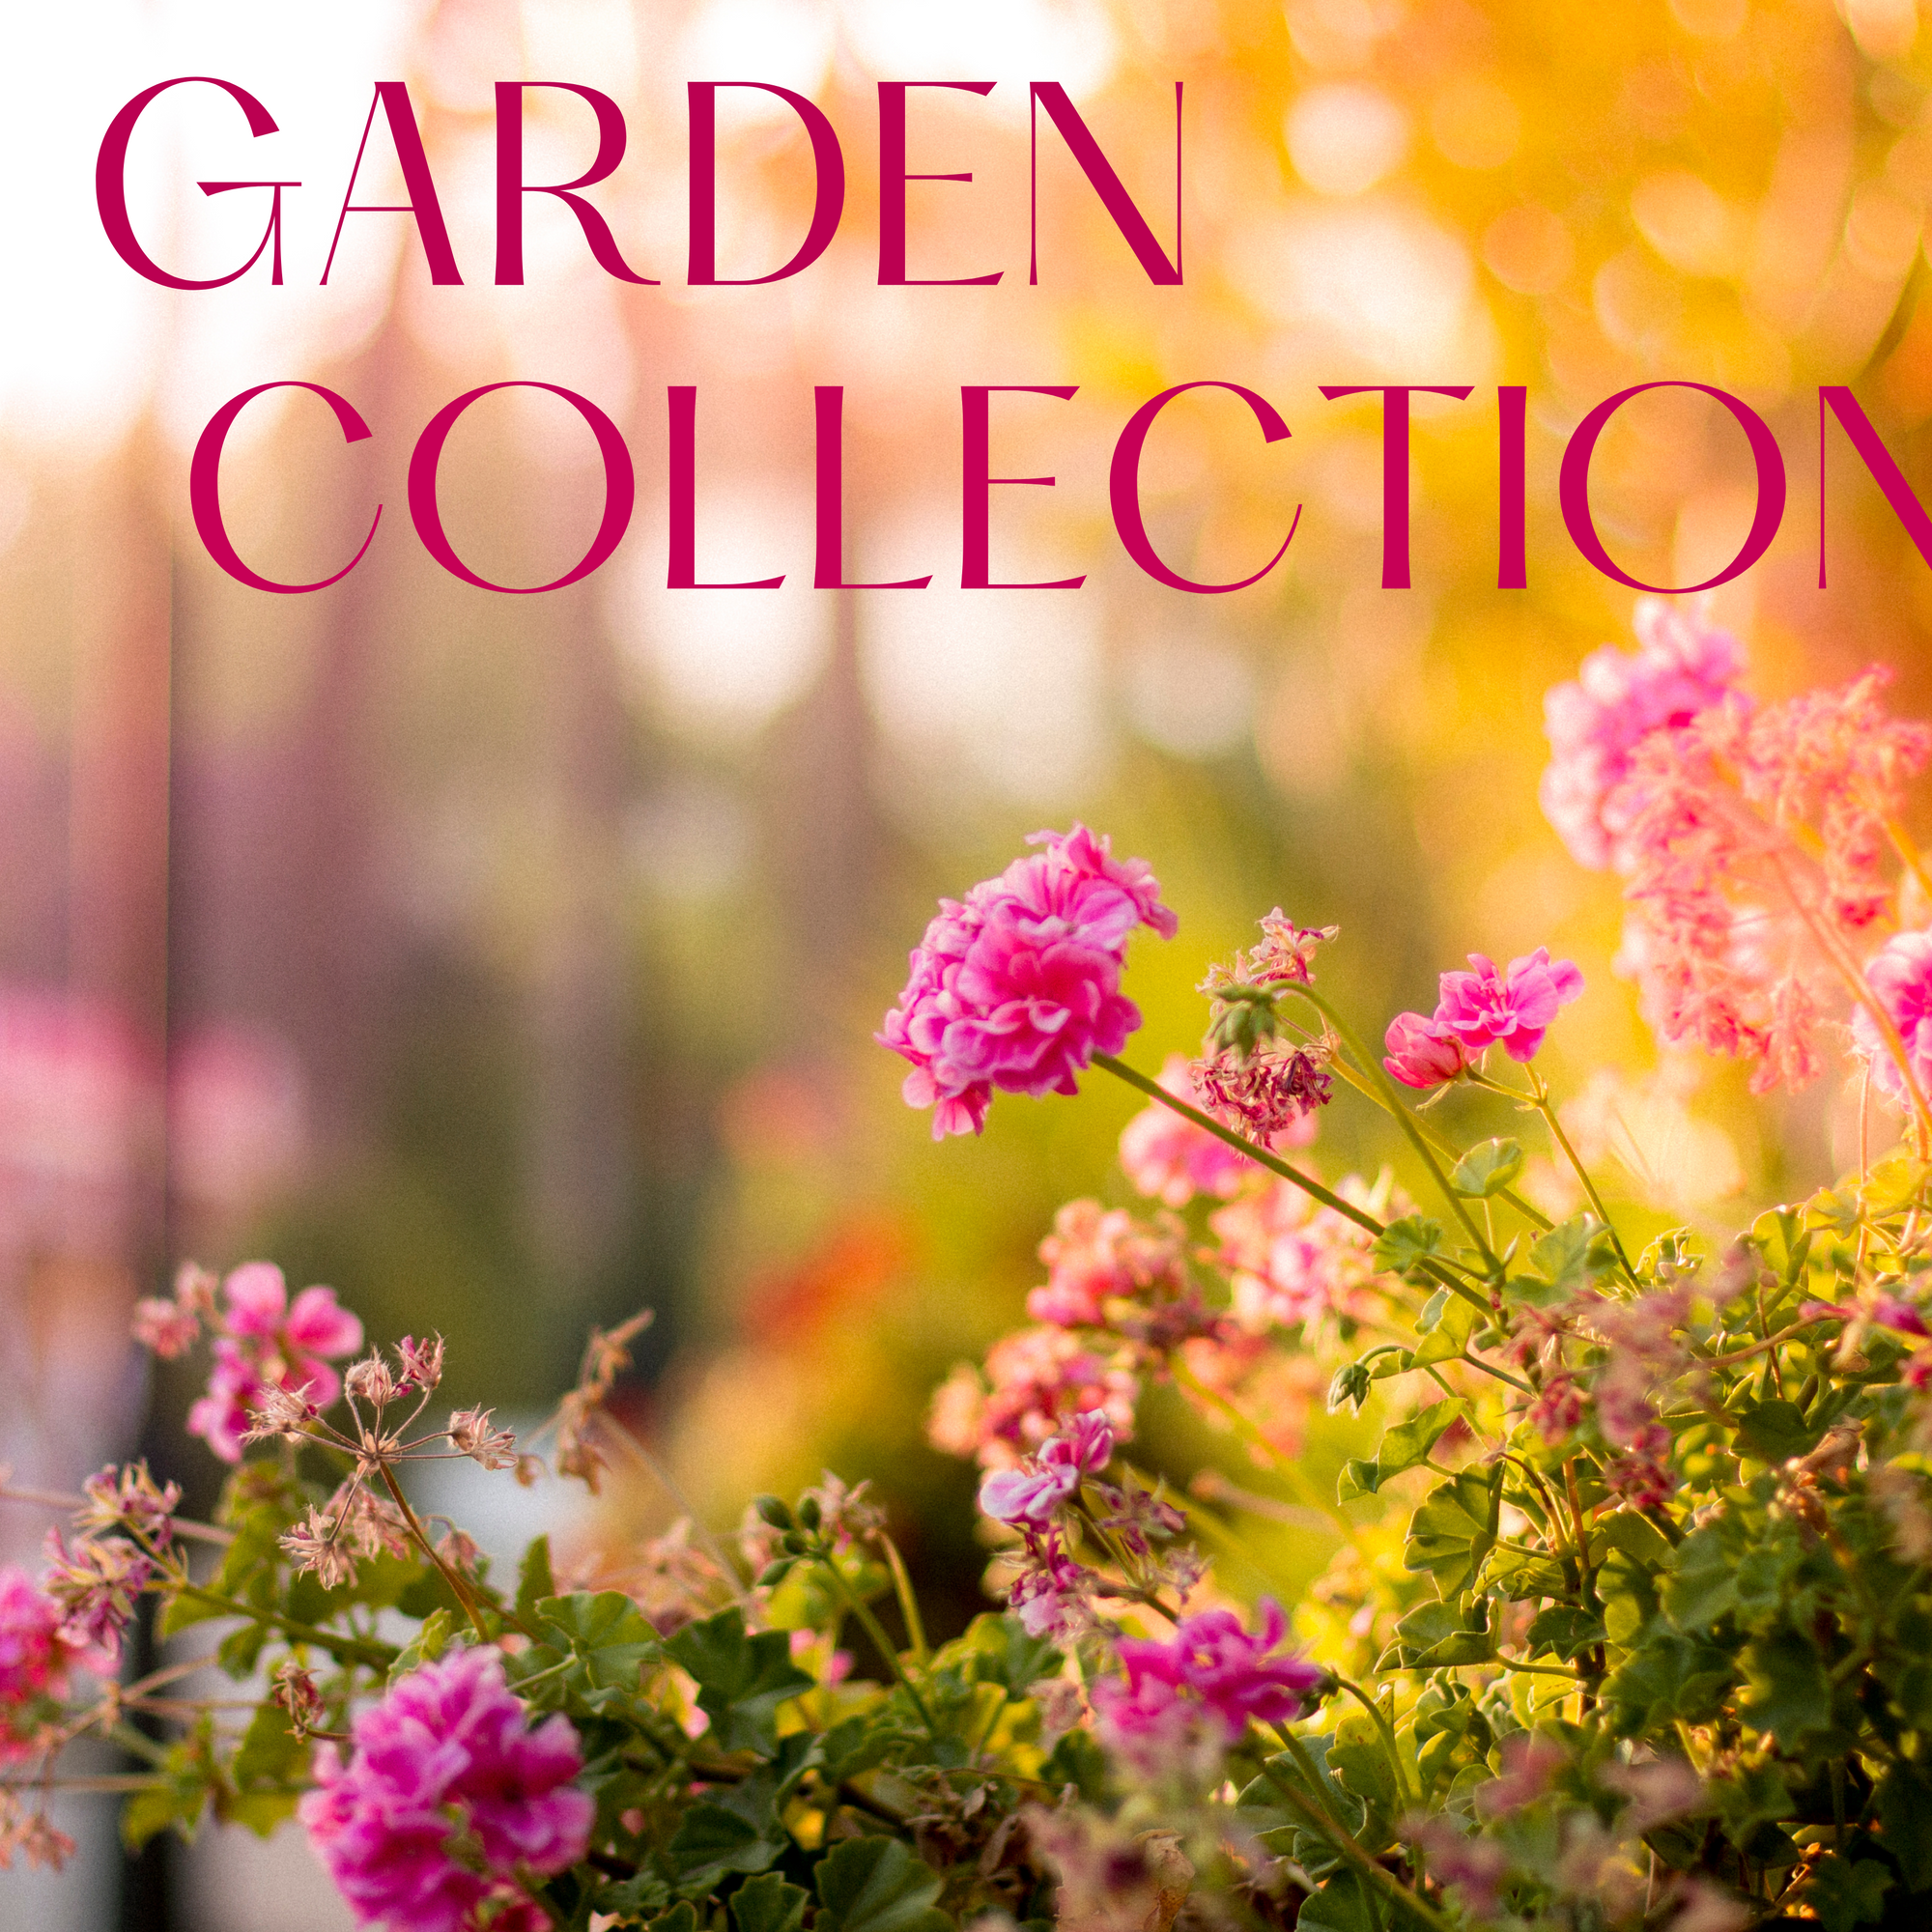 The Garden Collection